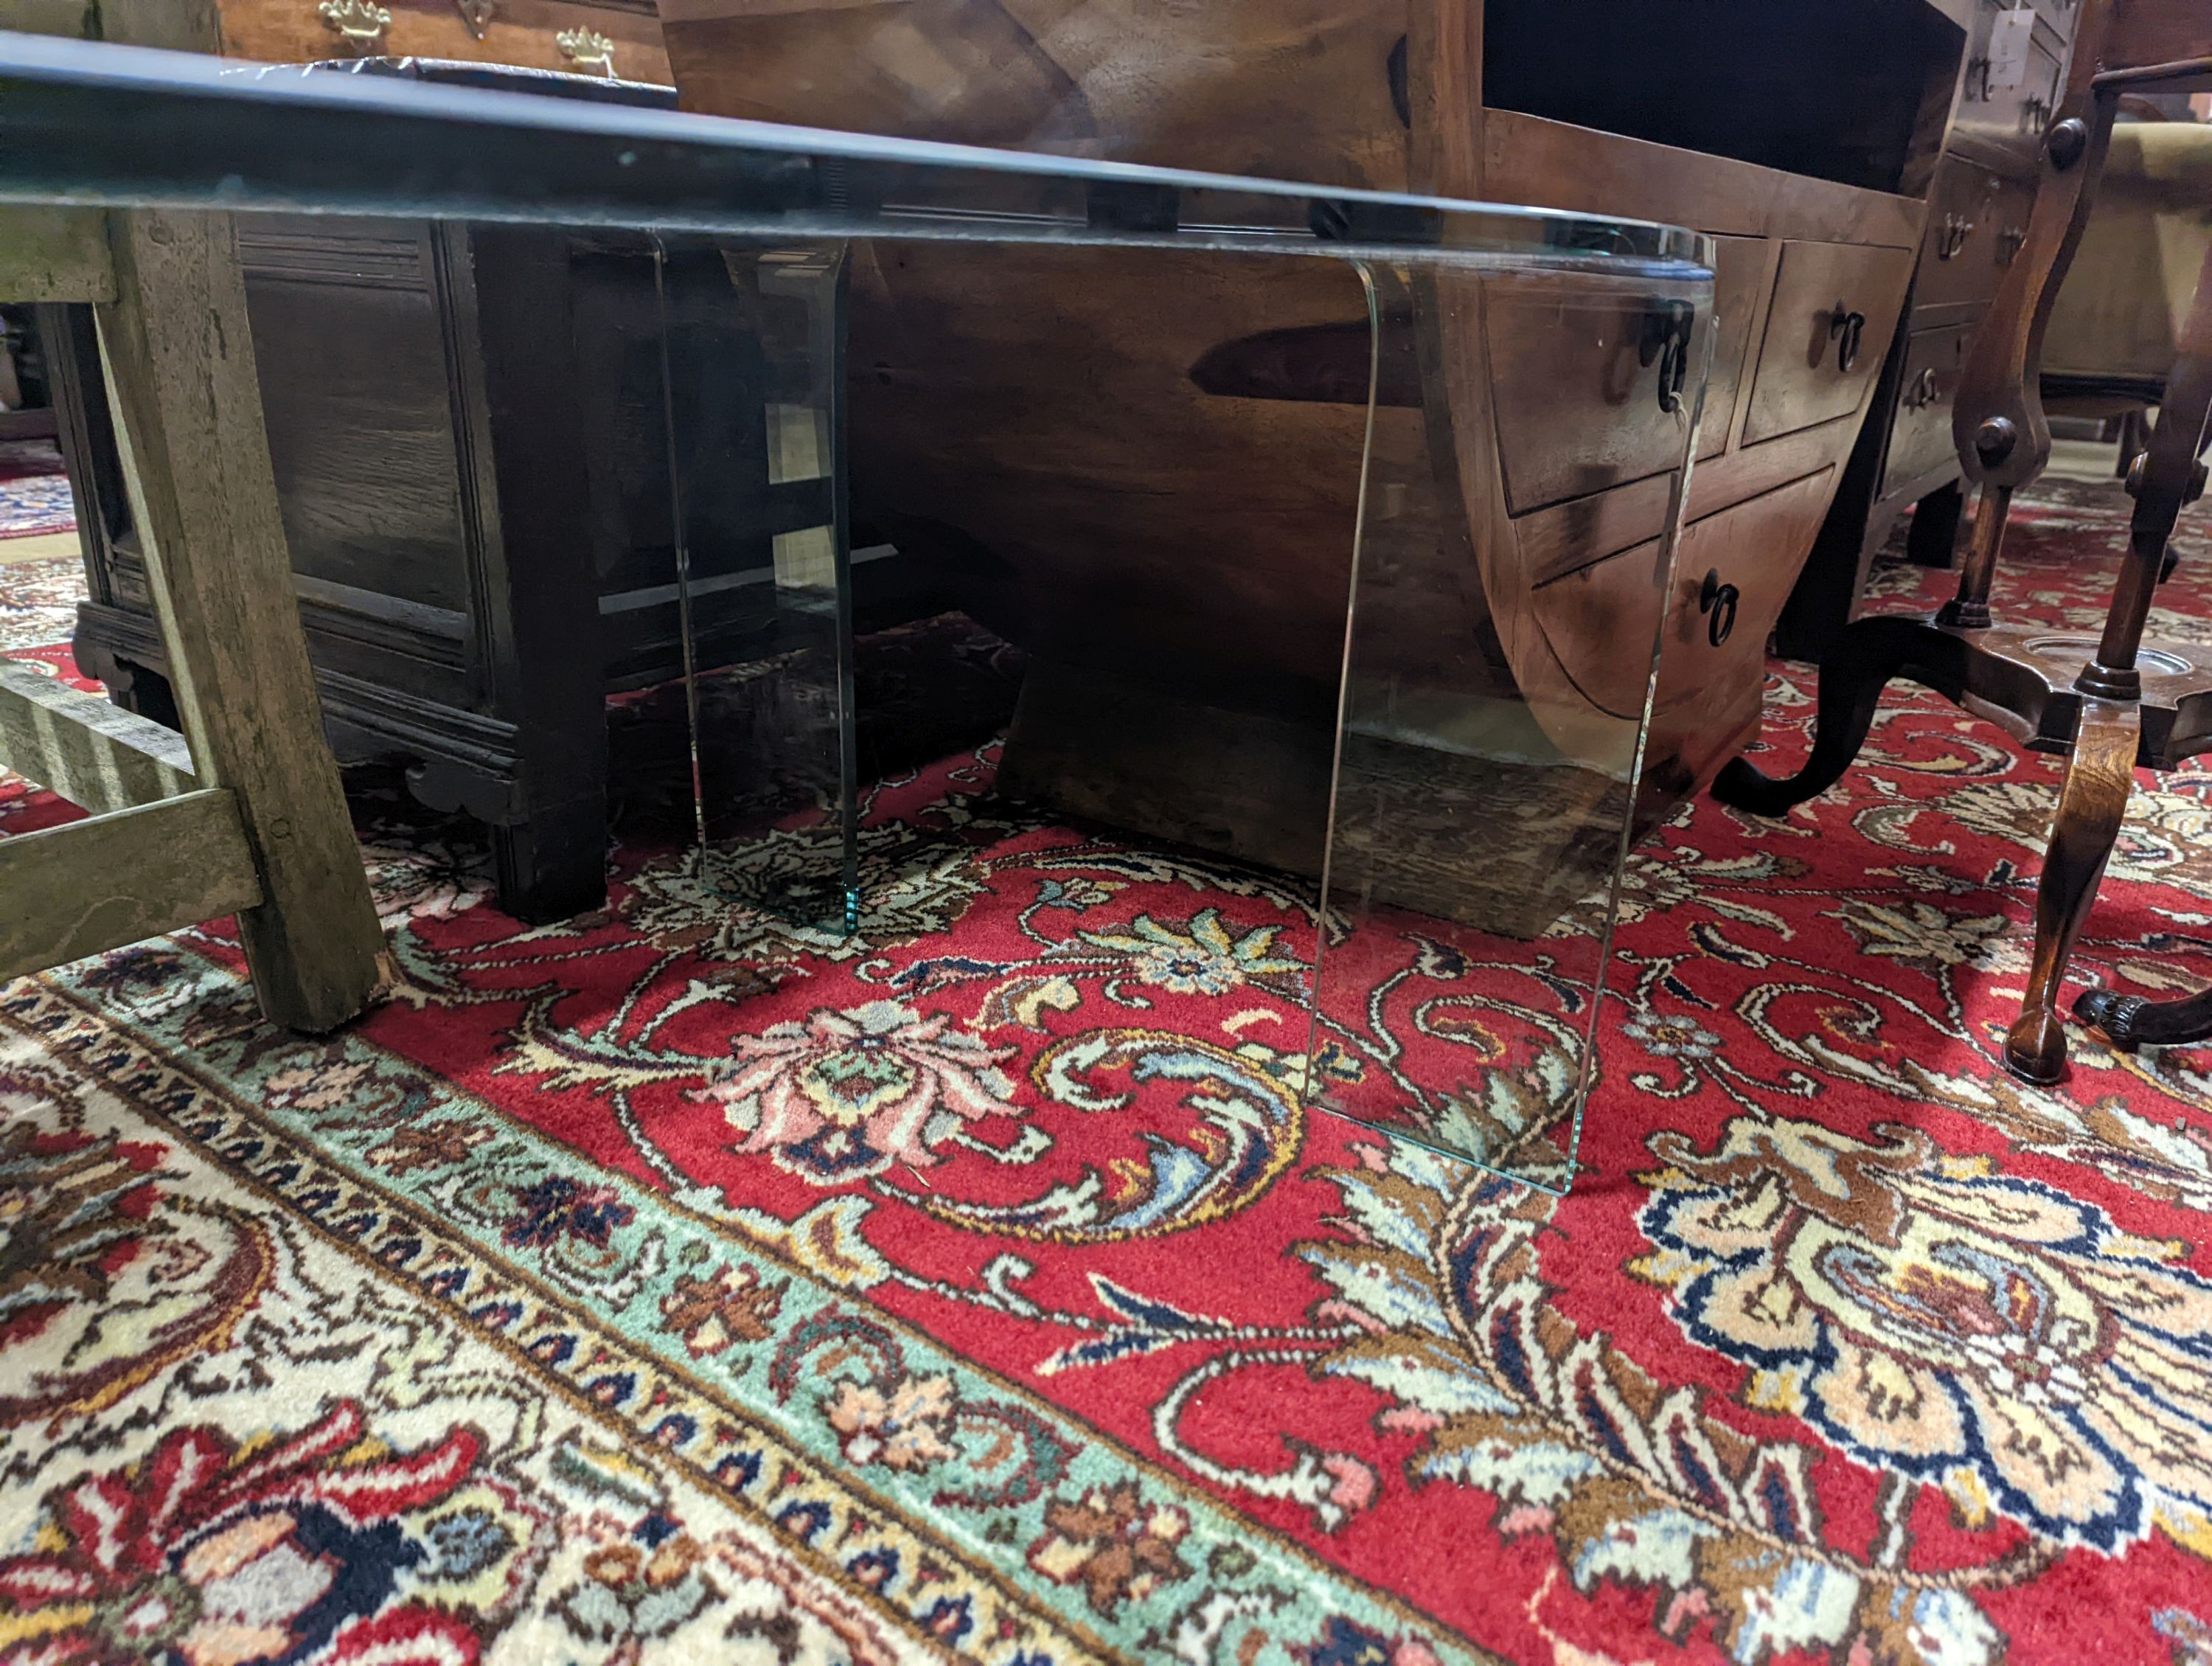 A contemporary rectangular glass coffee table, length 114cm, depth 60cm, height 43cm